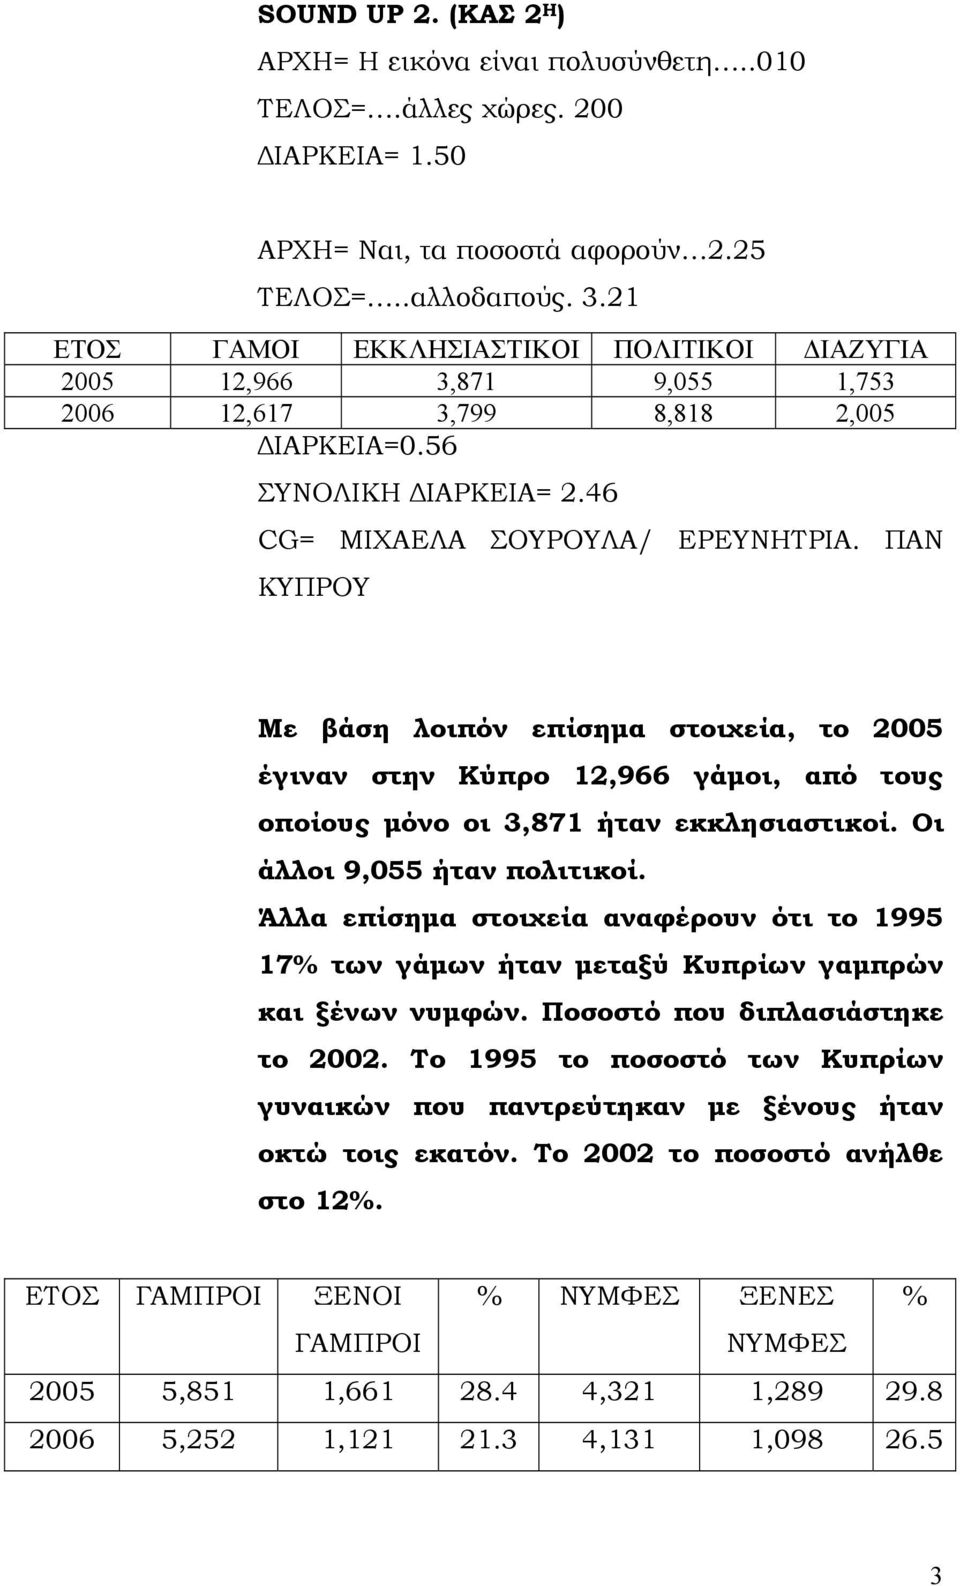 ΠΑΝ ΚΥΠΡΟΥ Με βάση λοιπόν επίσημα στοιχεία, το 2005 έγιναν στην Κύπρο 12,966 γάμοι, από τους οποίους μόνο οι 3,871 ήταν εκκλησιαστικοί. Οι άλλοι 9,055 ήταν πολιτικοί.